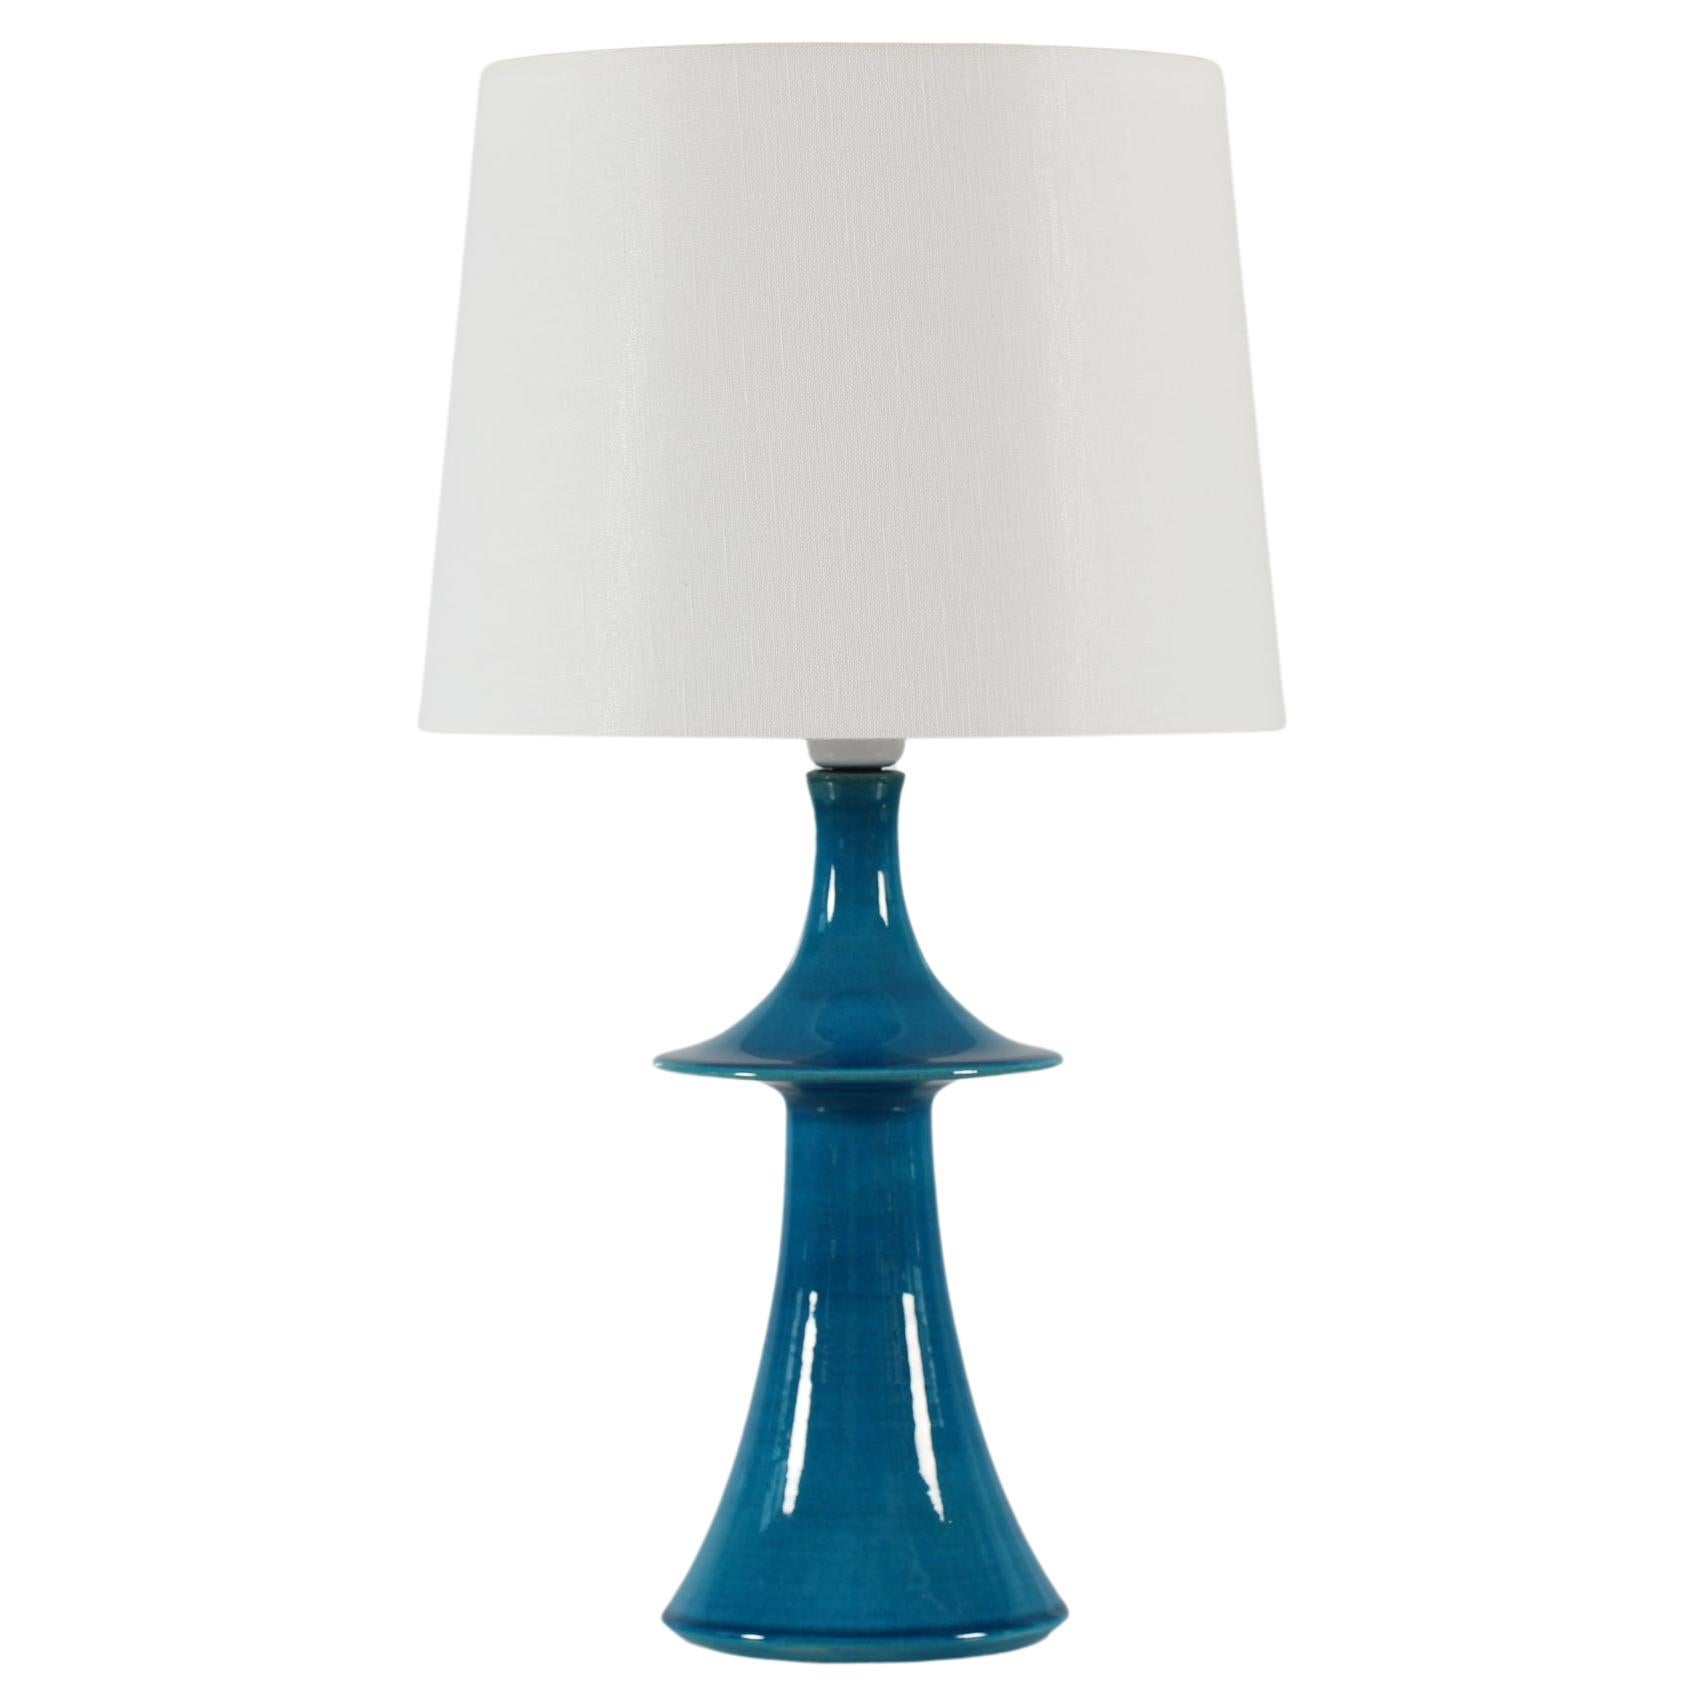 Danish Kähler + Poul Erik Eliasen Style Sculptural Table Lamp Turquoise Blue 60s For Sale